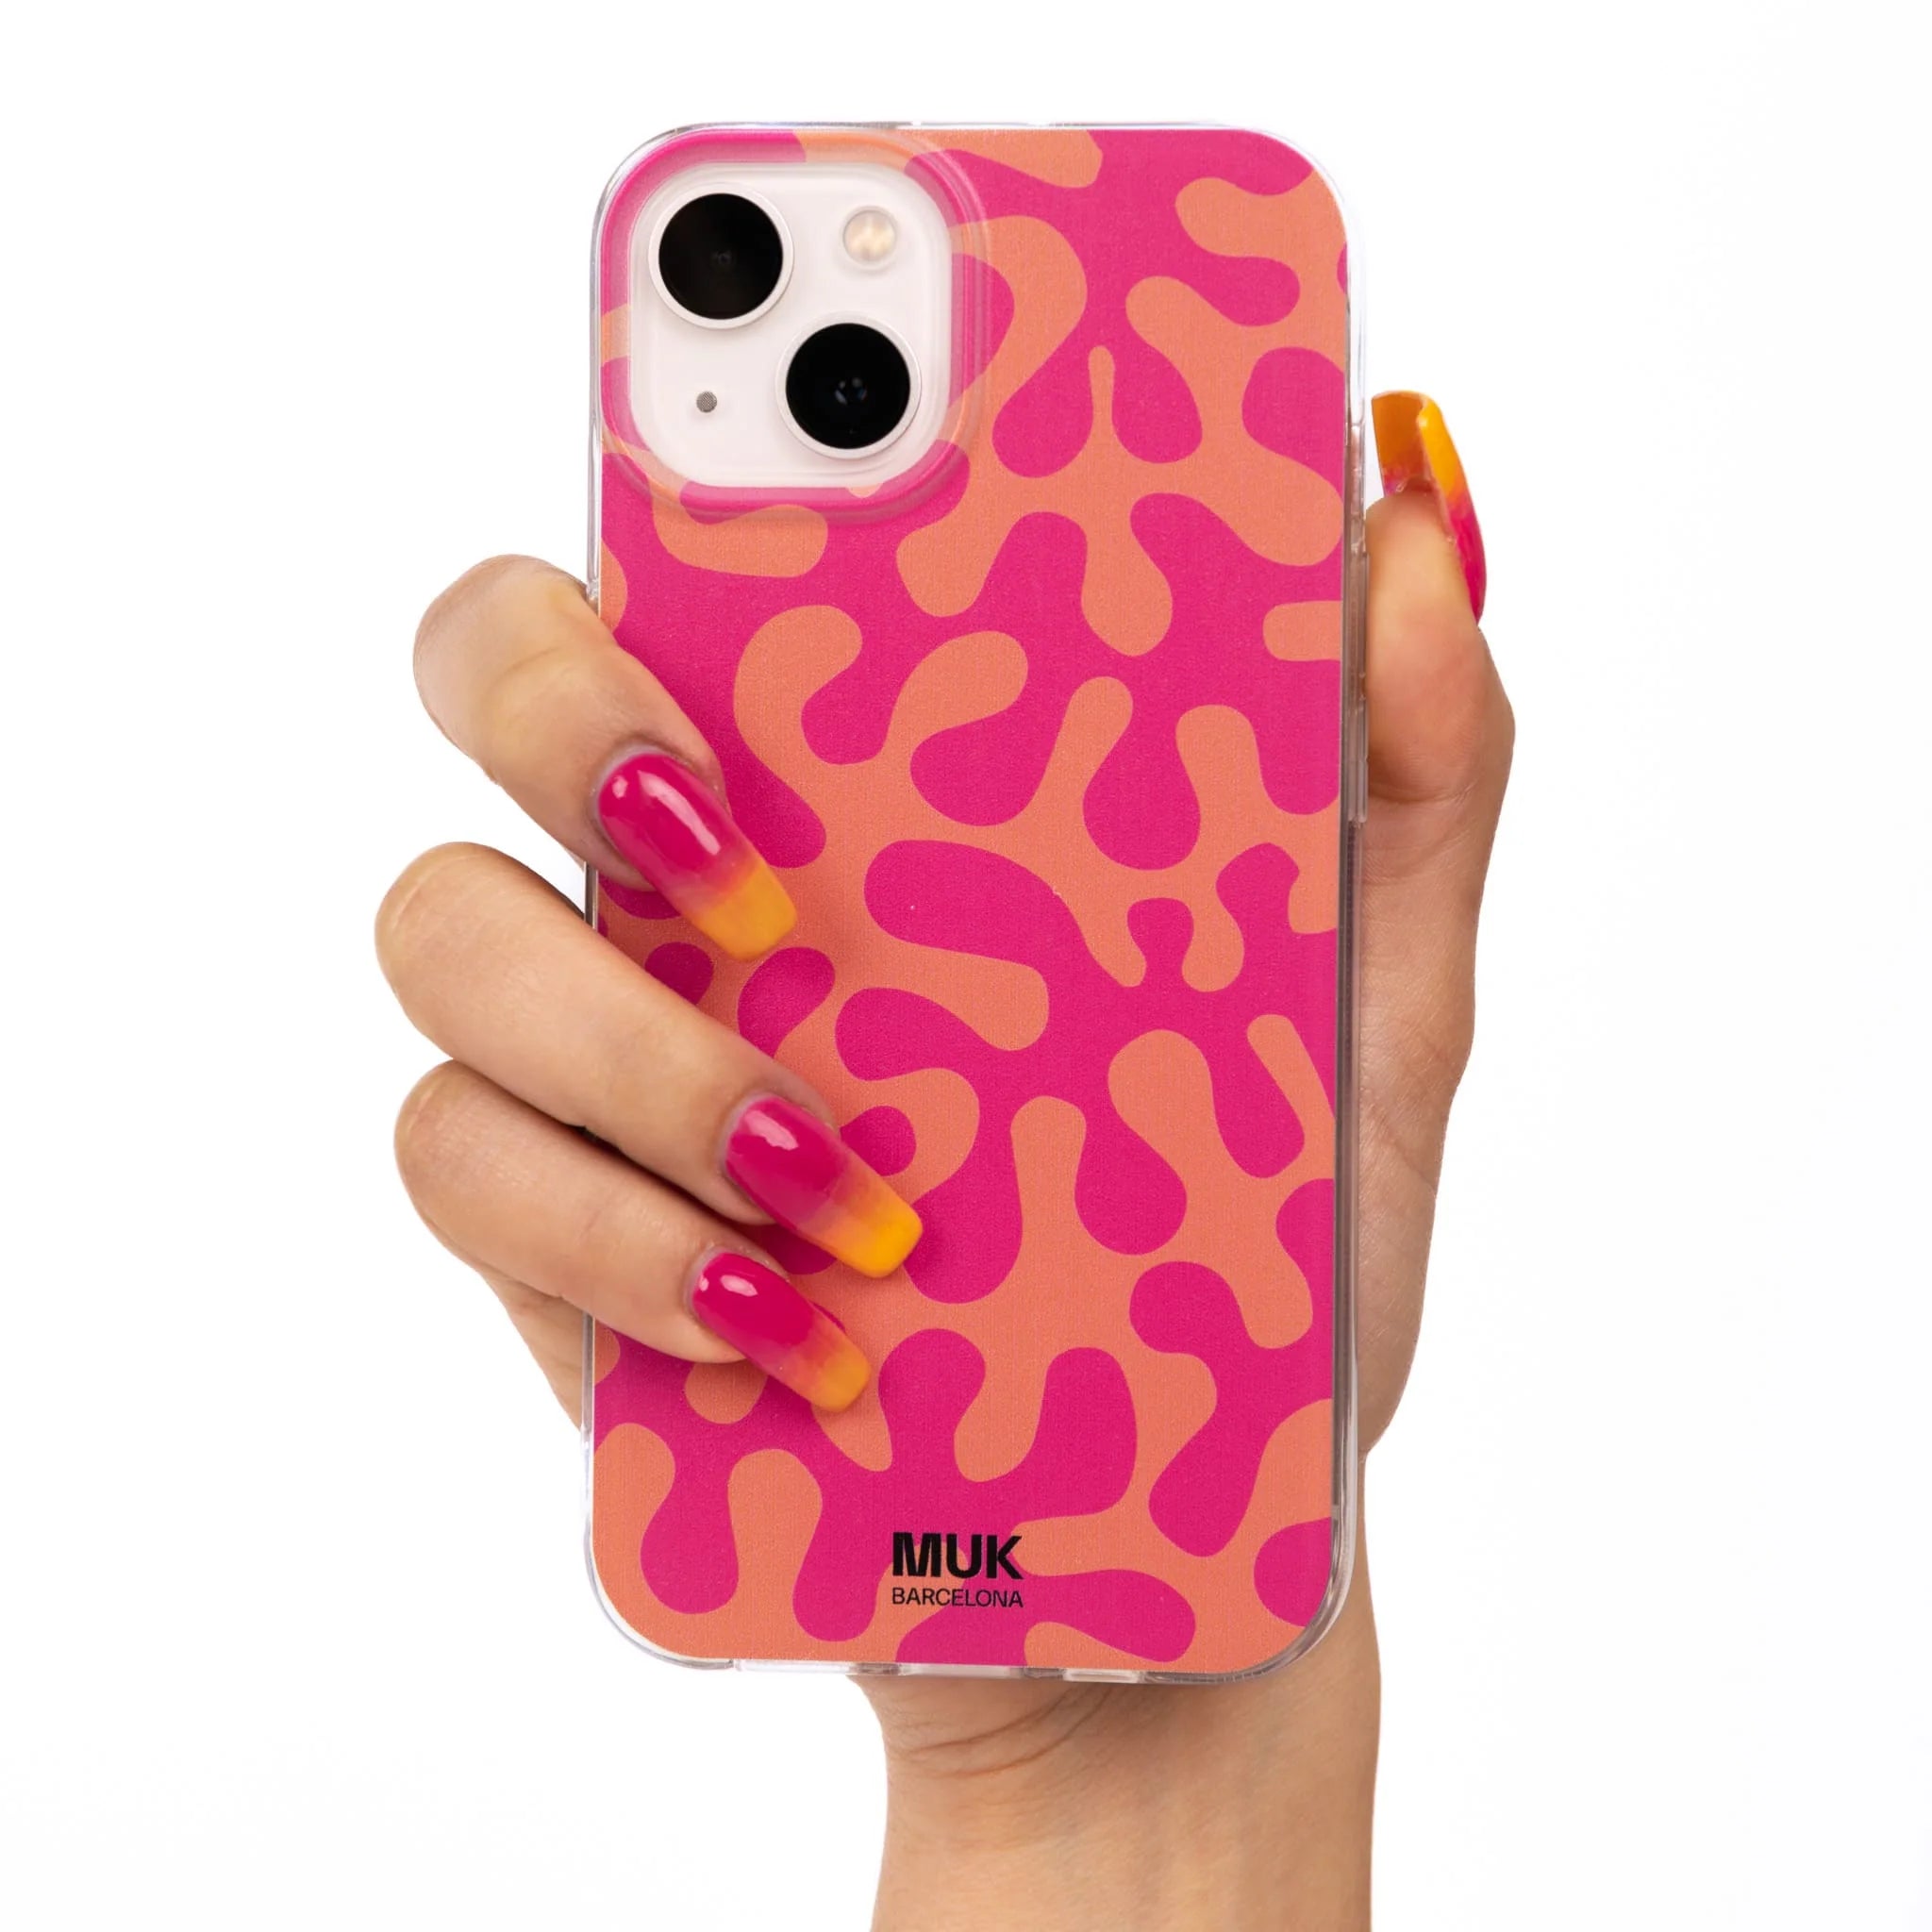 Funda de móvil transparente con estampado coral rosa y naranja.
